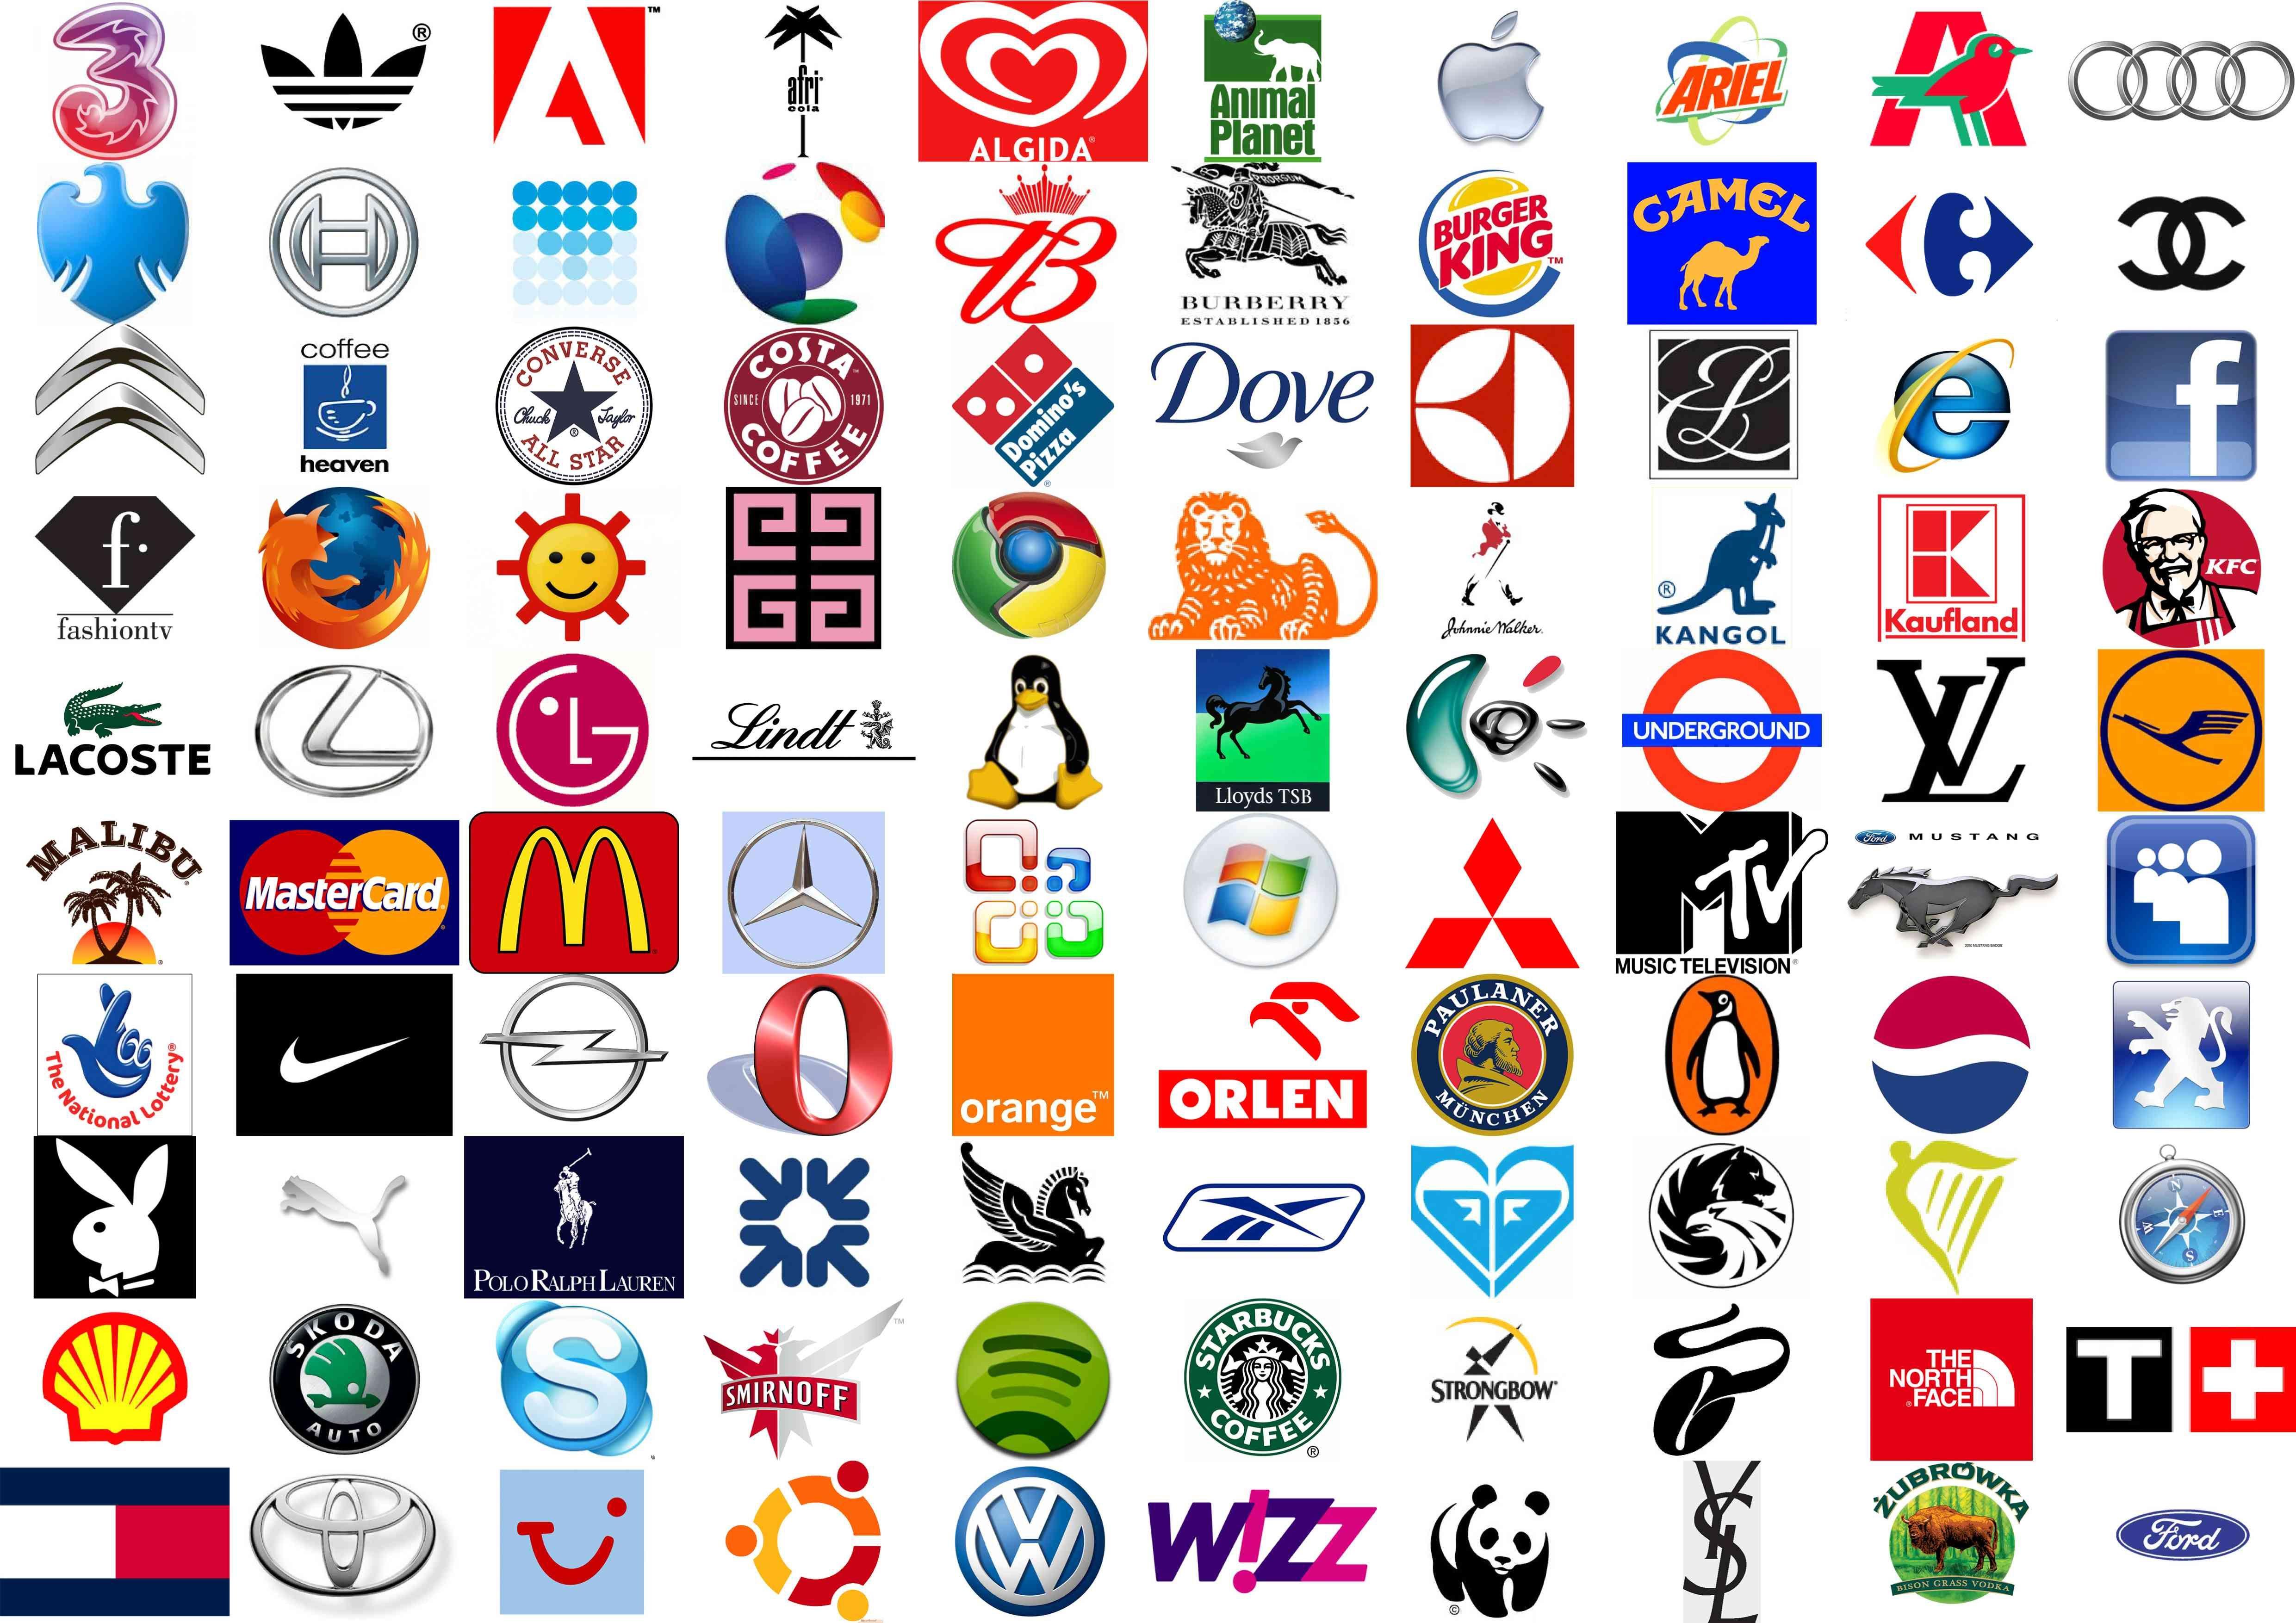 Famous Brand Logo - Famous Brand Logos | Logos | Pinterest | Logos, Famous logos and ...